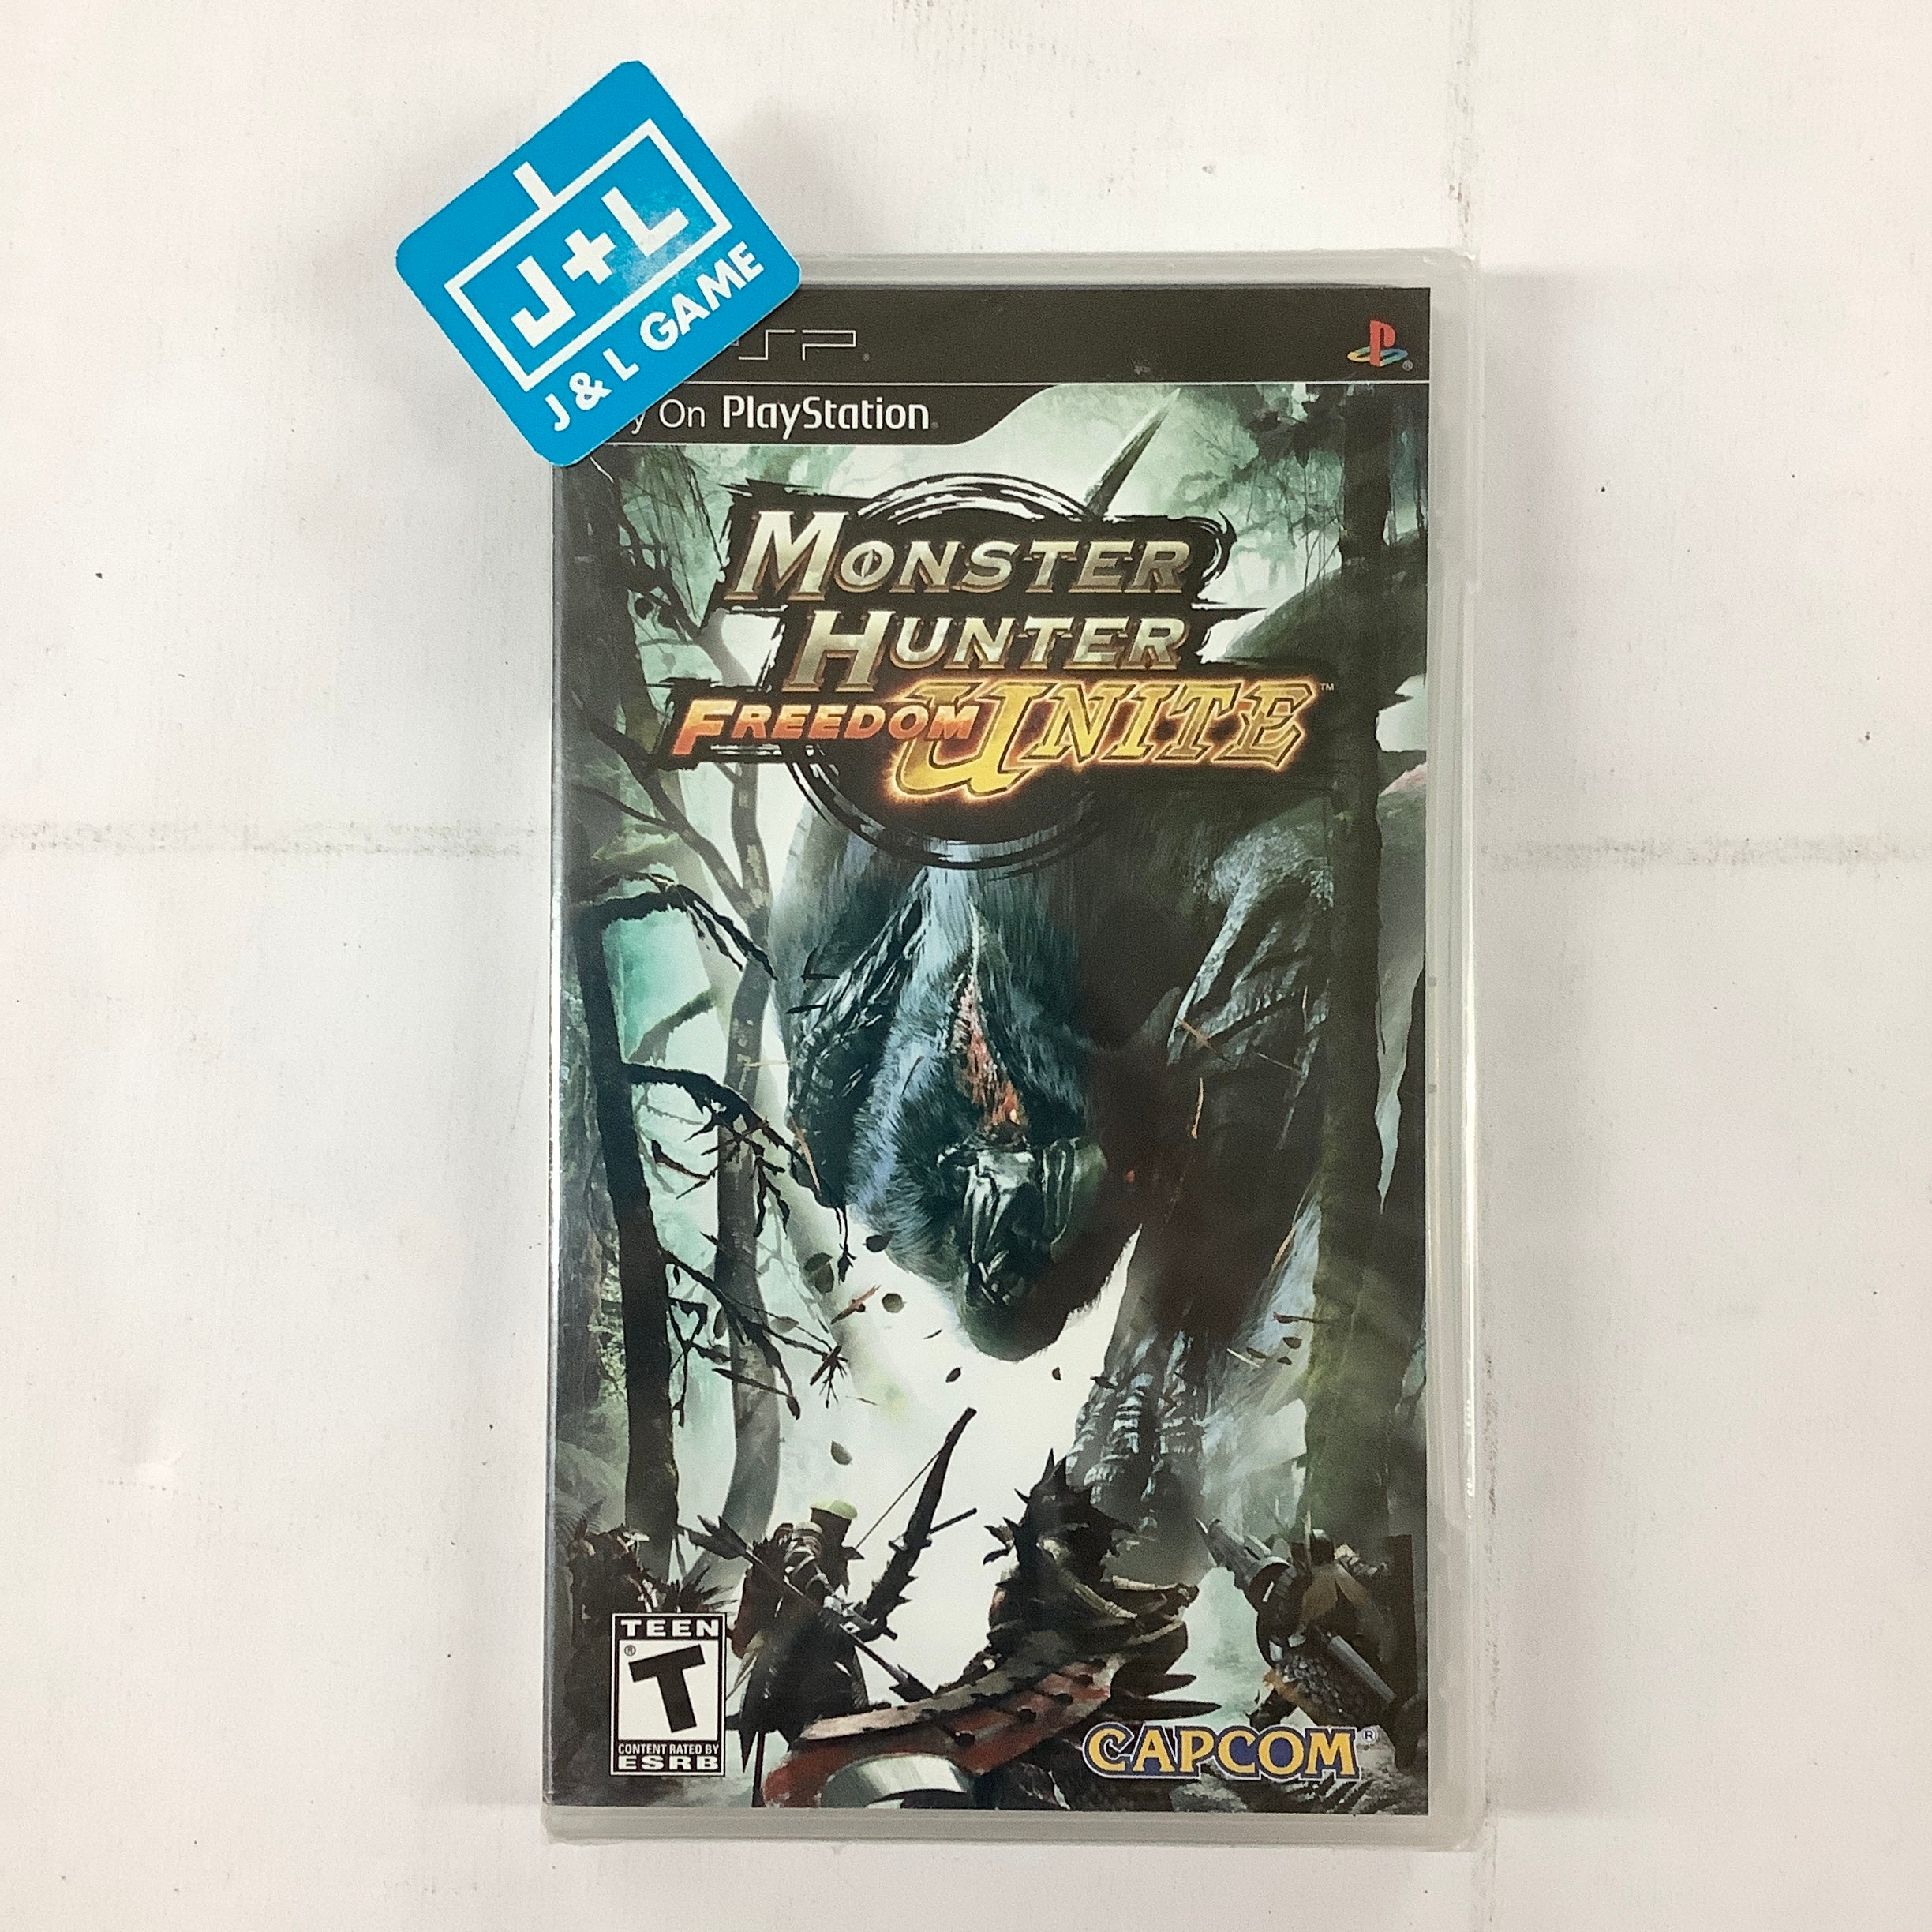 Monster Hunter Freedom Unite - Sony PSP Video Games Capcom   